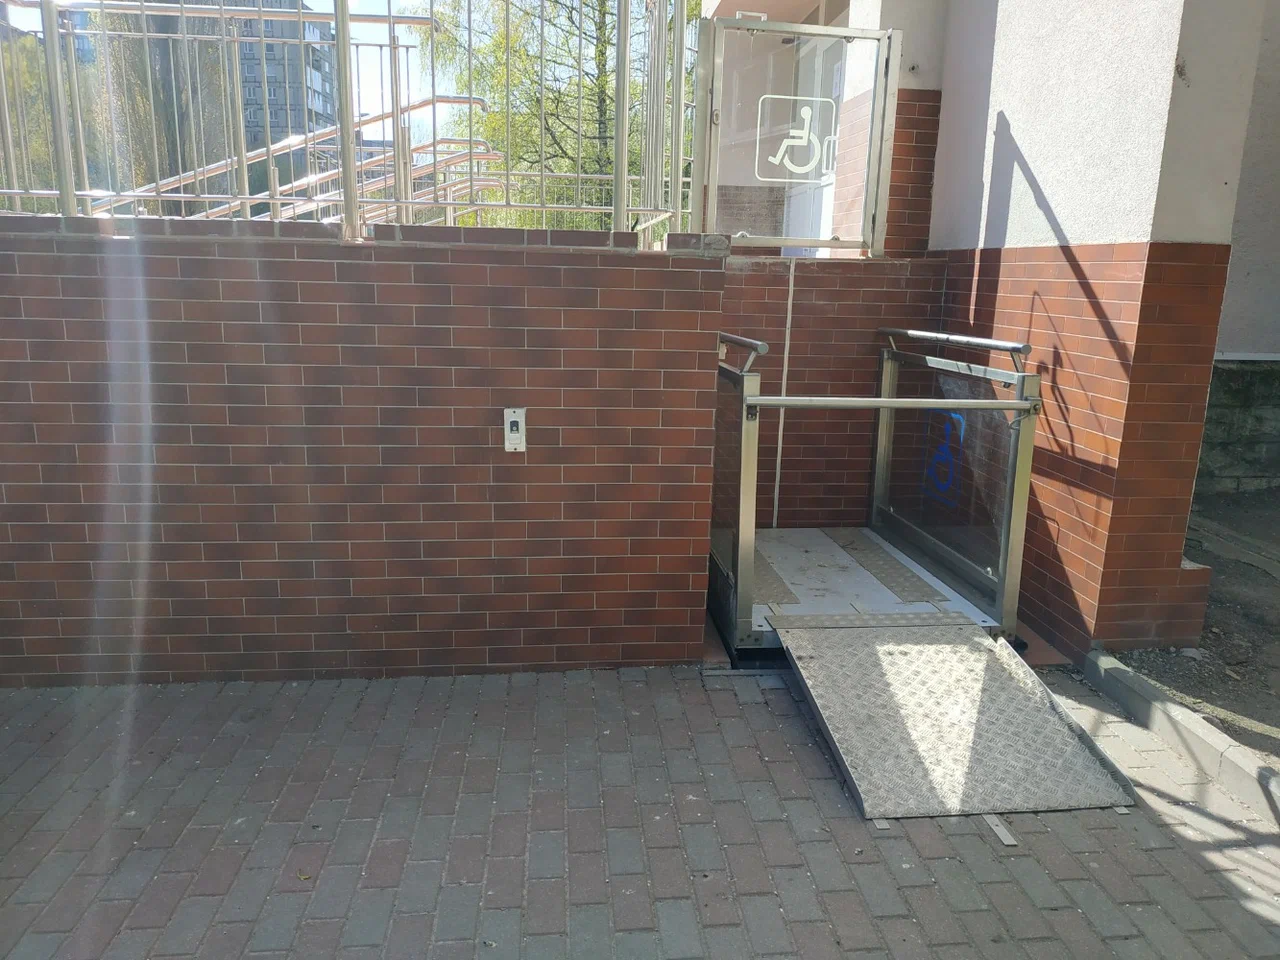 Подъёмник на входе в школу (доступная среда)